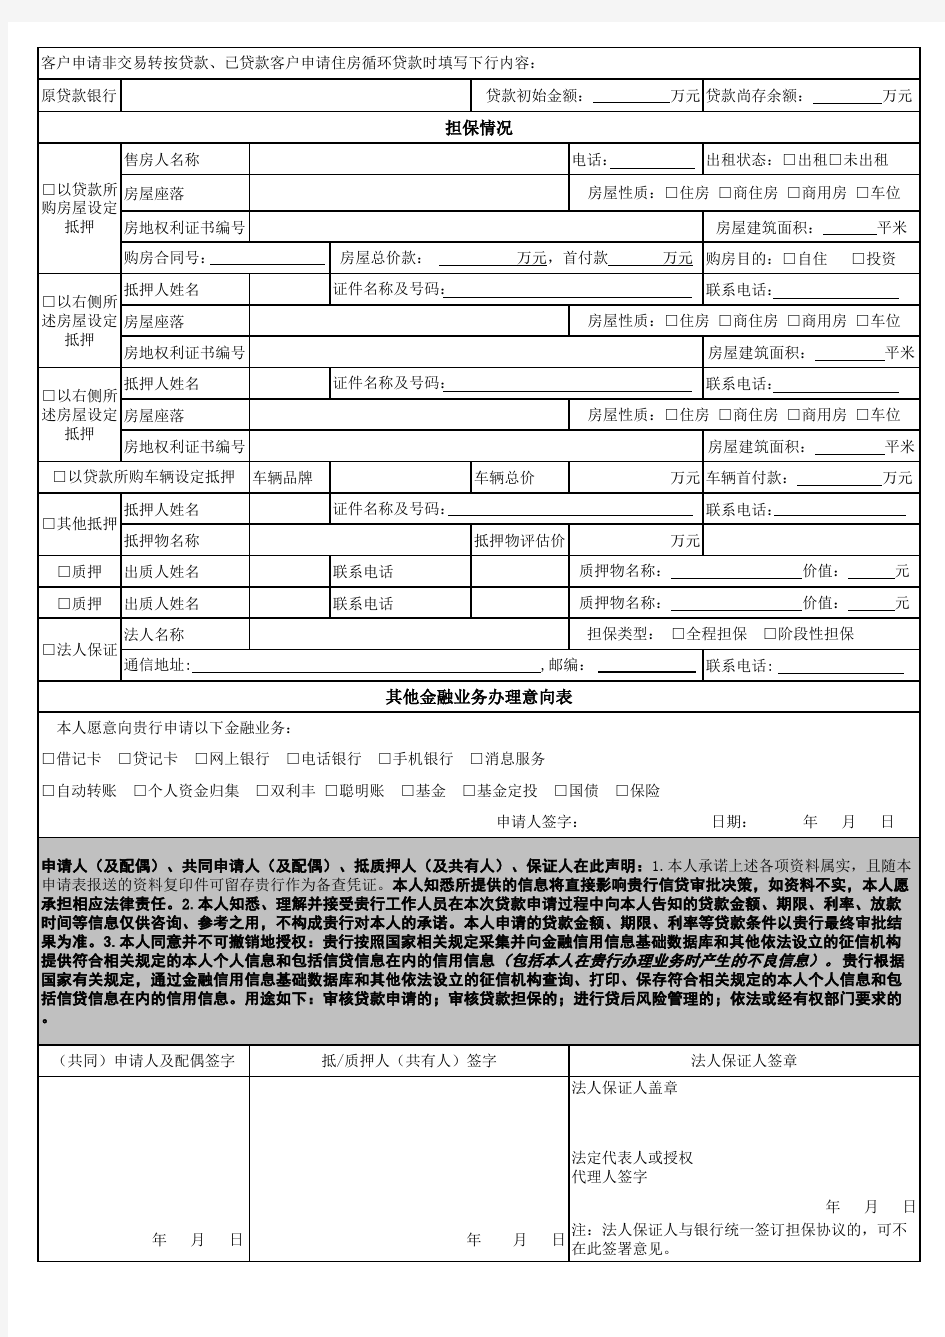 2013年中国农行银行个人信贷业务申请表(完整版)